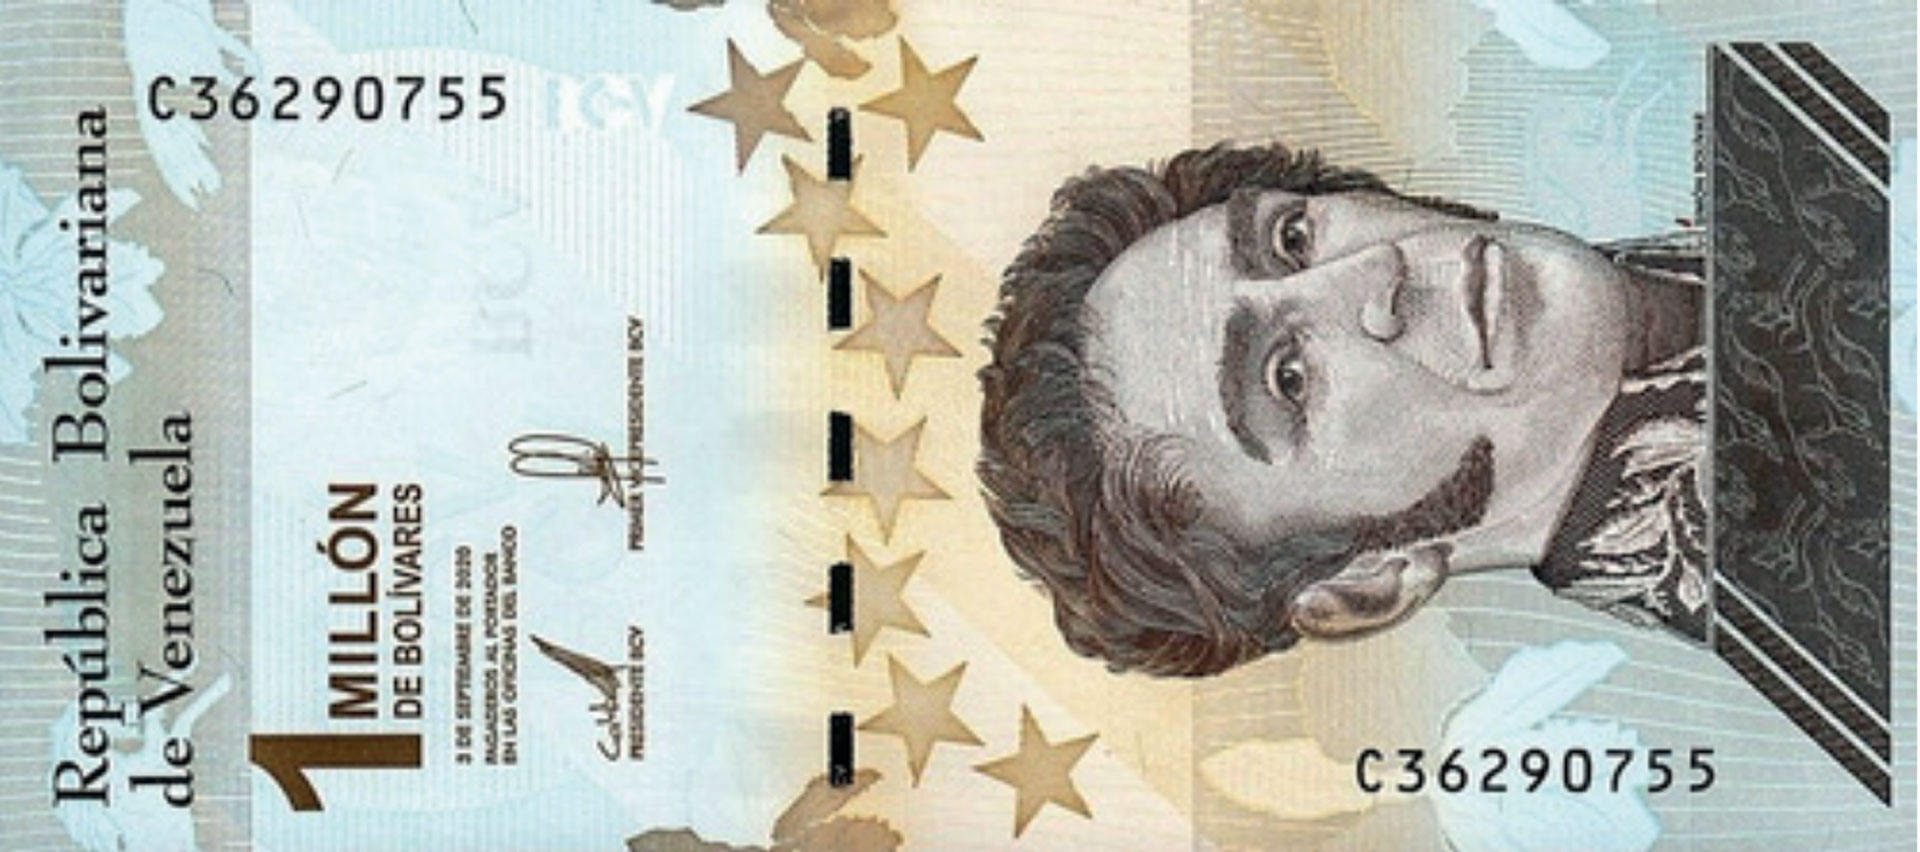 VENEZUELA Bolívares: bS 1.000.000 = USD 60.439 USD1 = Bs 16.43